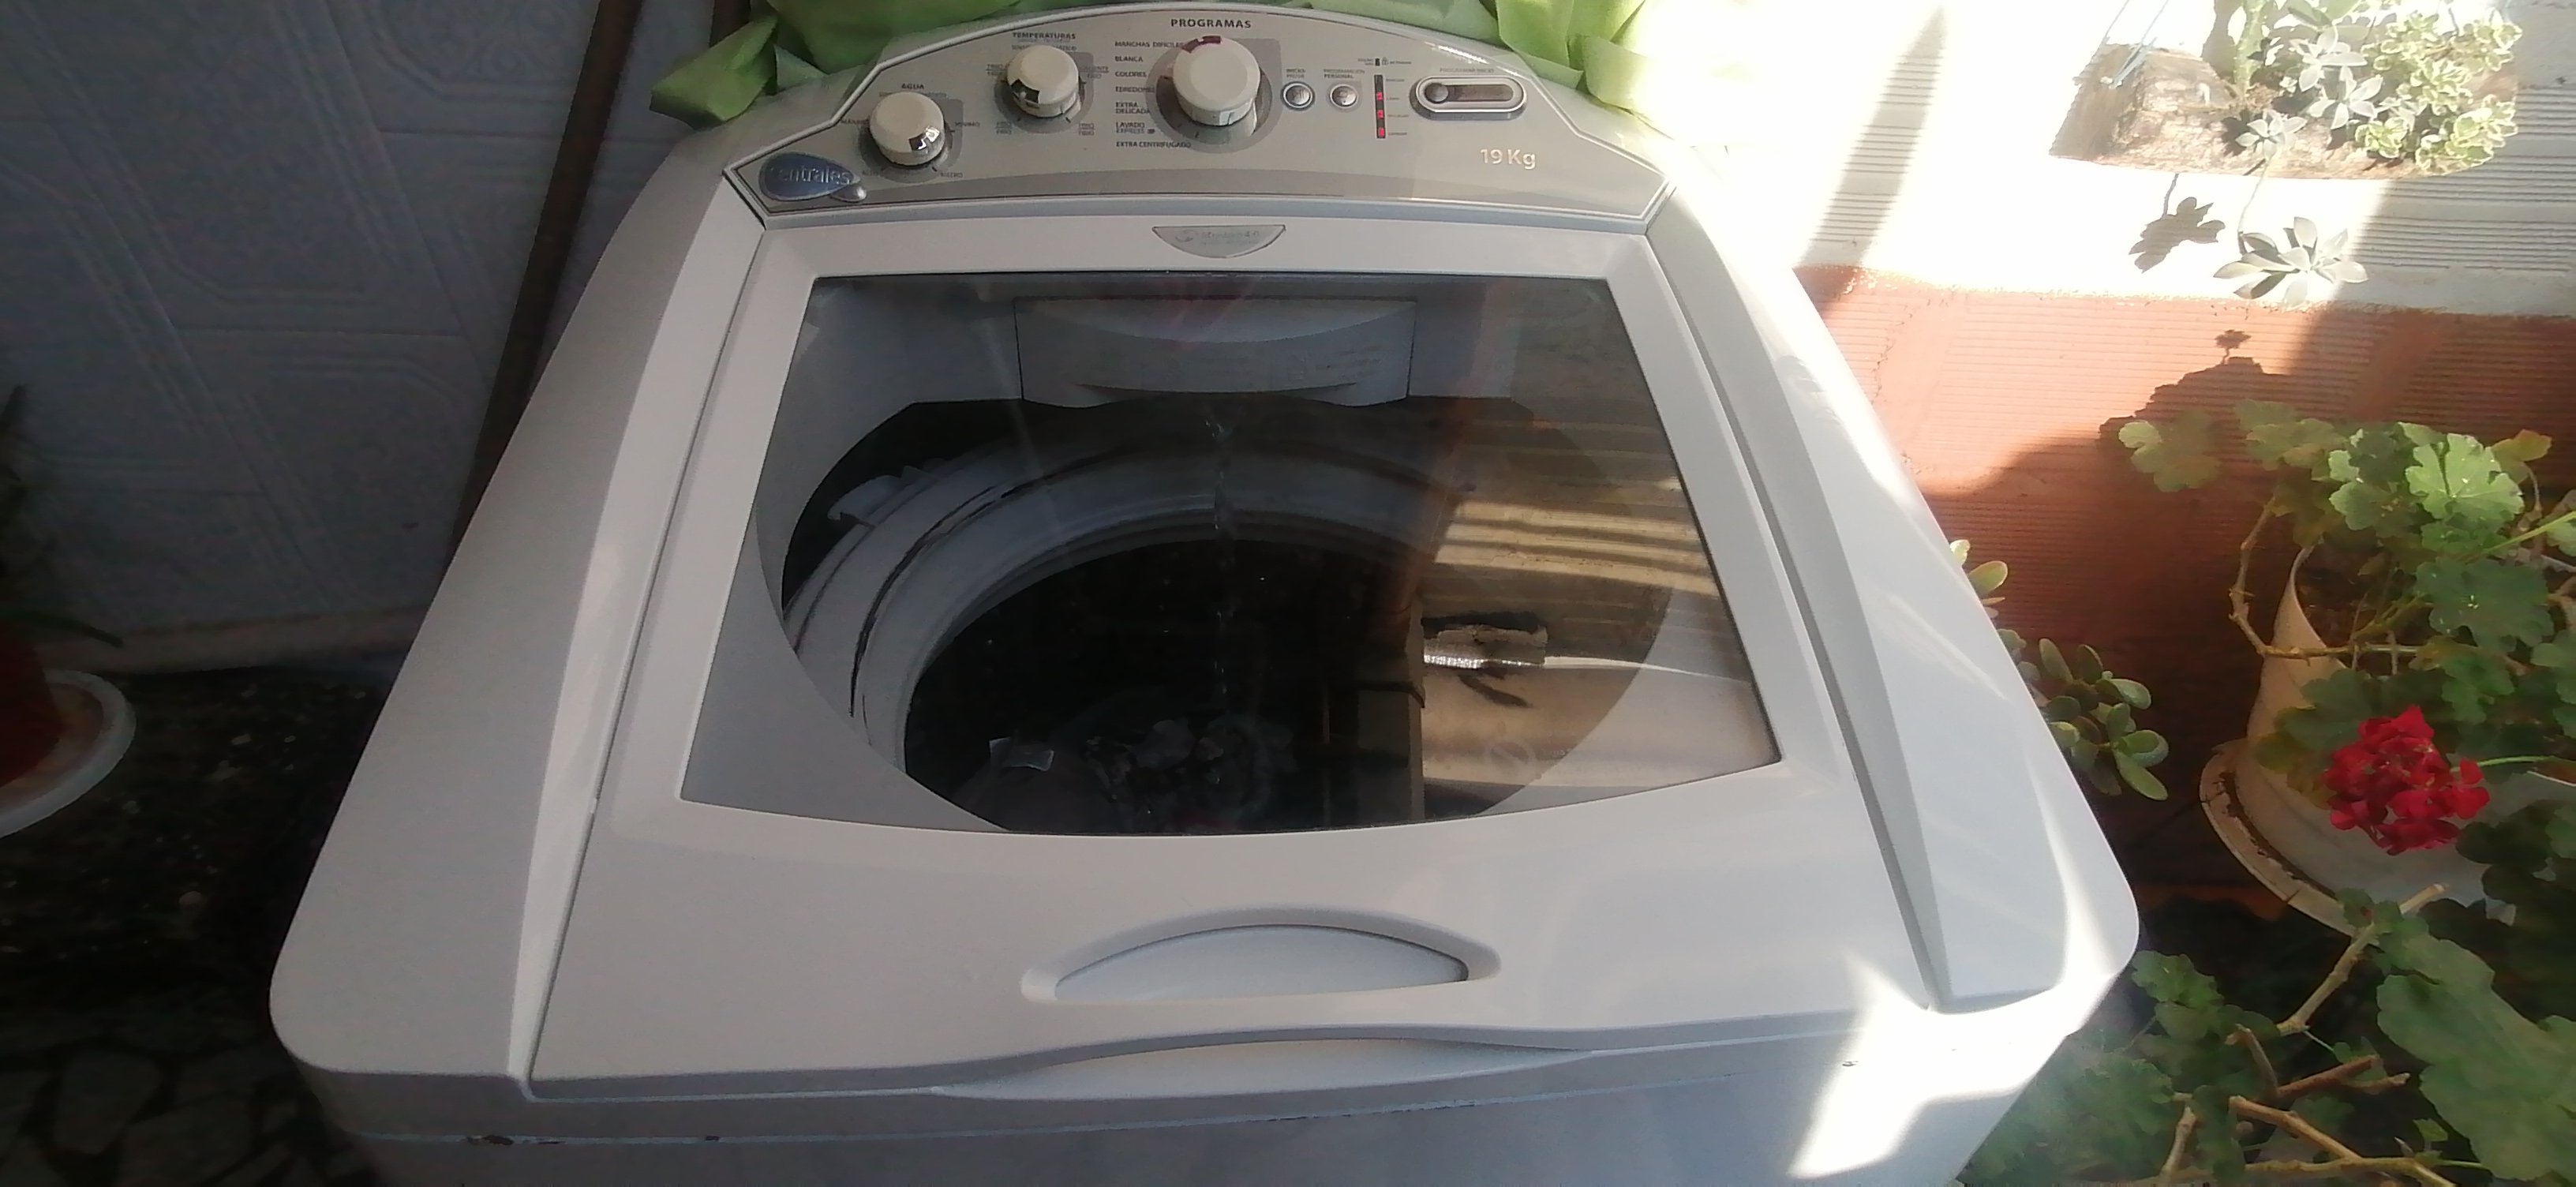 Tengo esta lavadora hace 5 años vivo feliz con ella y me gustaría conseguir el manual de usuario ...